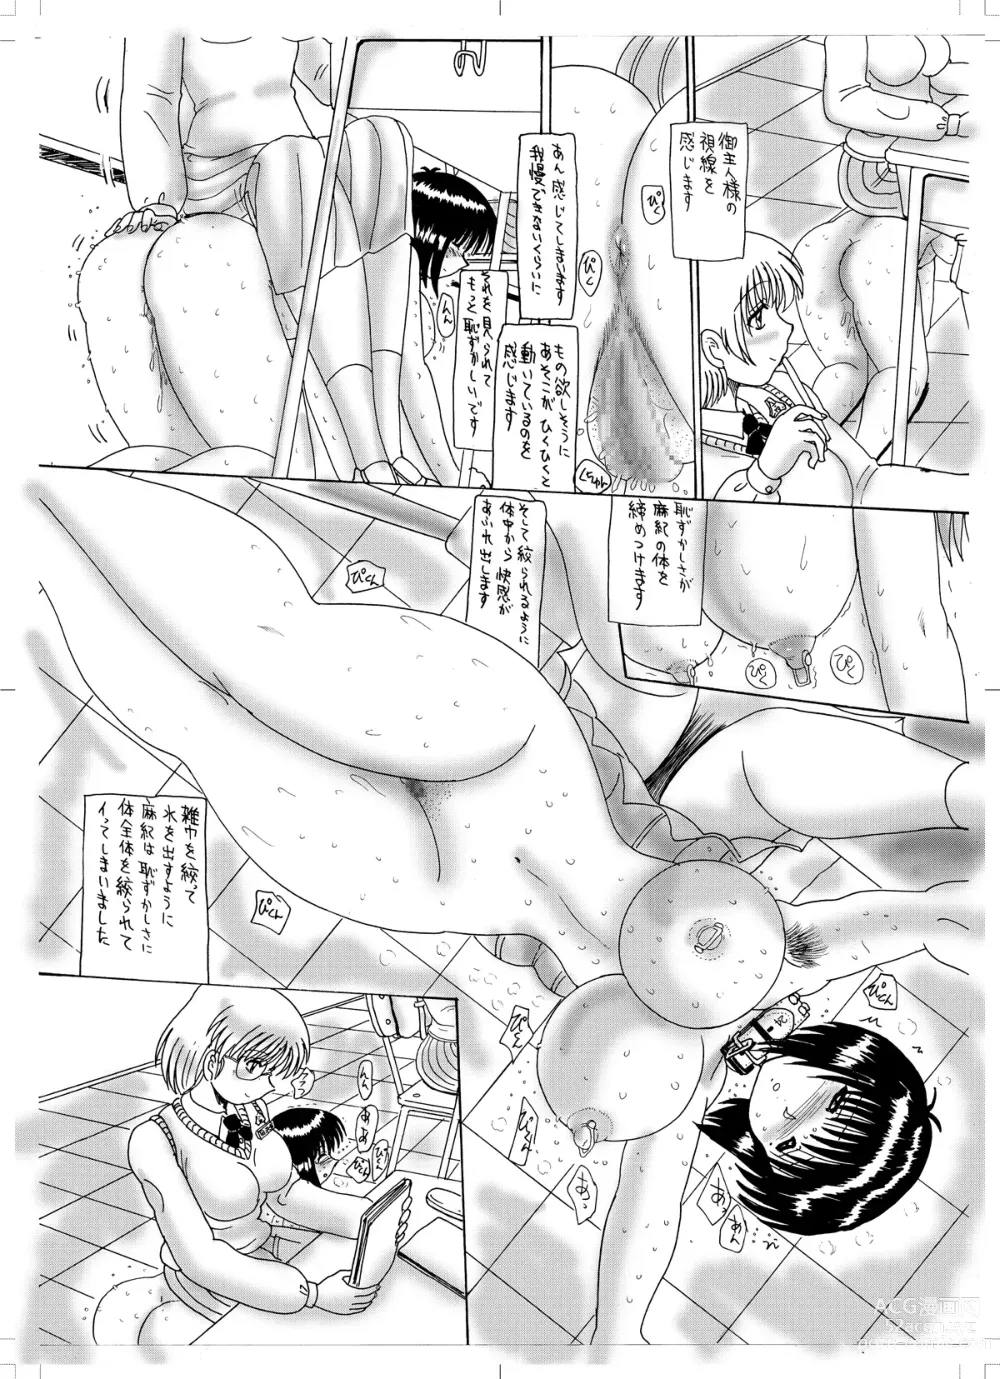 Page 27 of doujinshi Maso Dorei Maki ~Gakkou de no Fuukei~